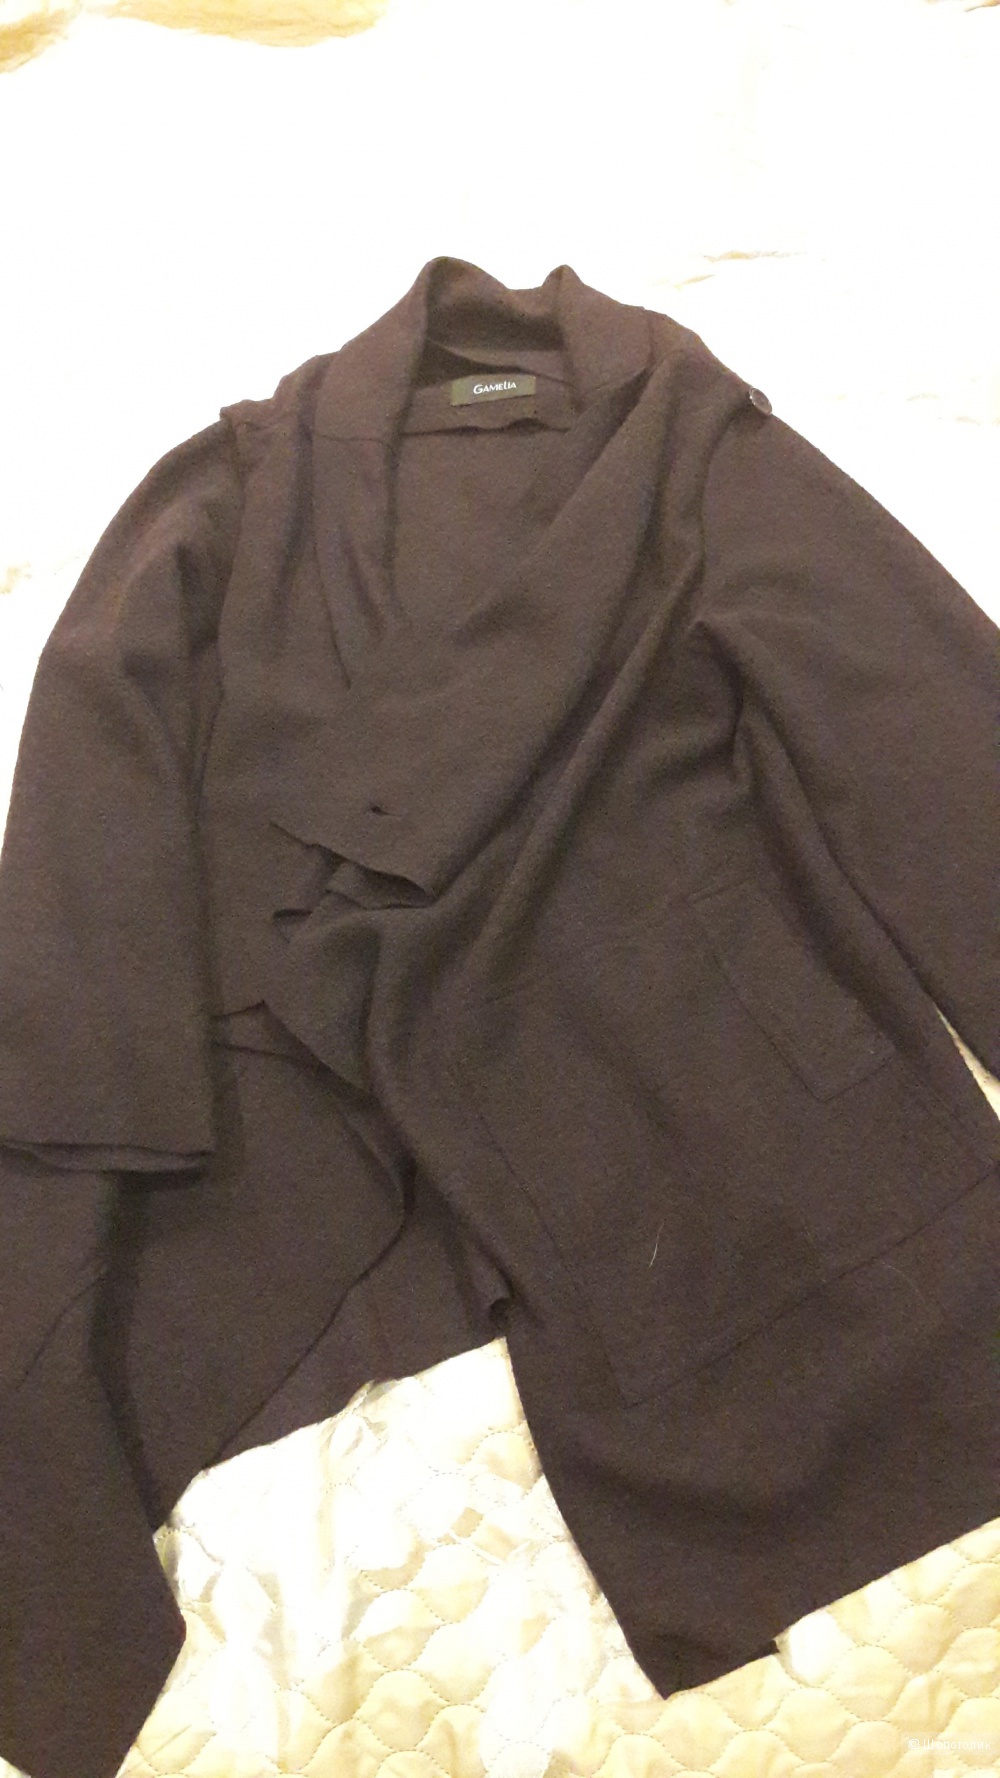 Пальто из валяной шерсти Gamelia размер 46-48 рост 170